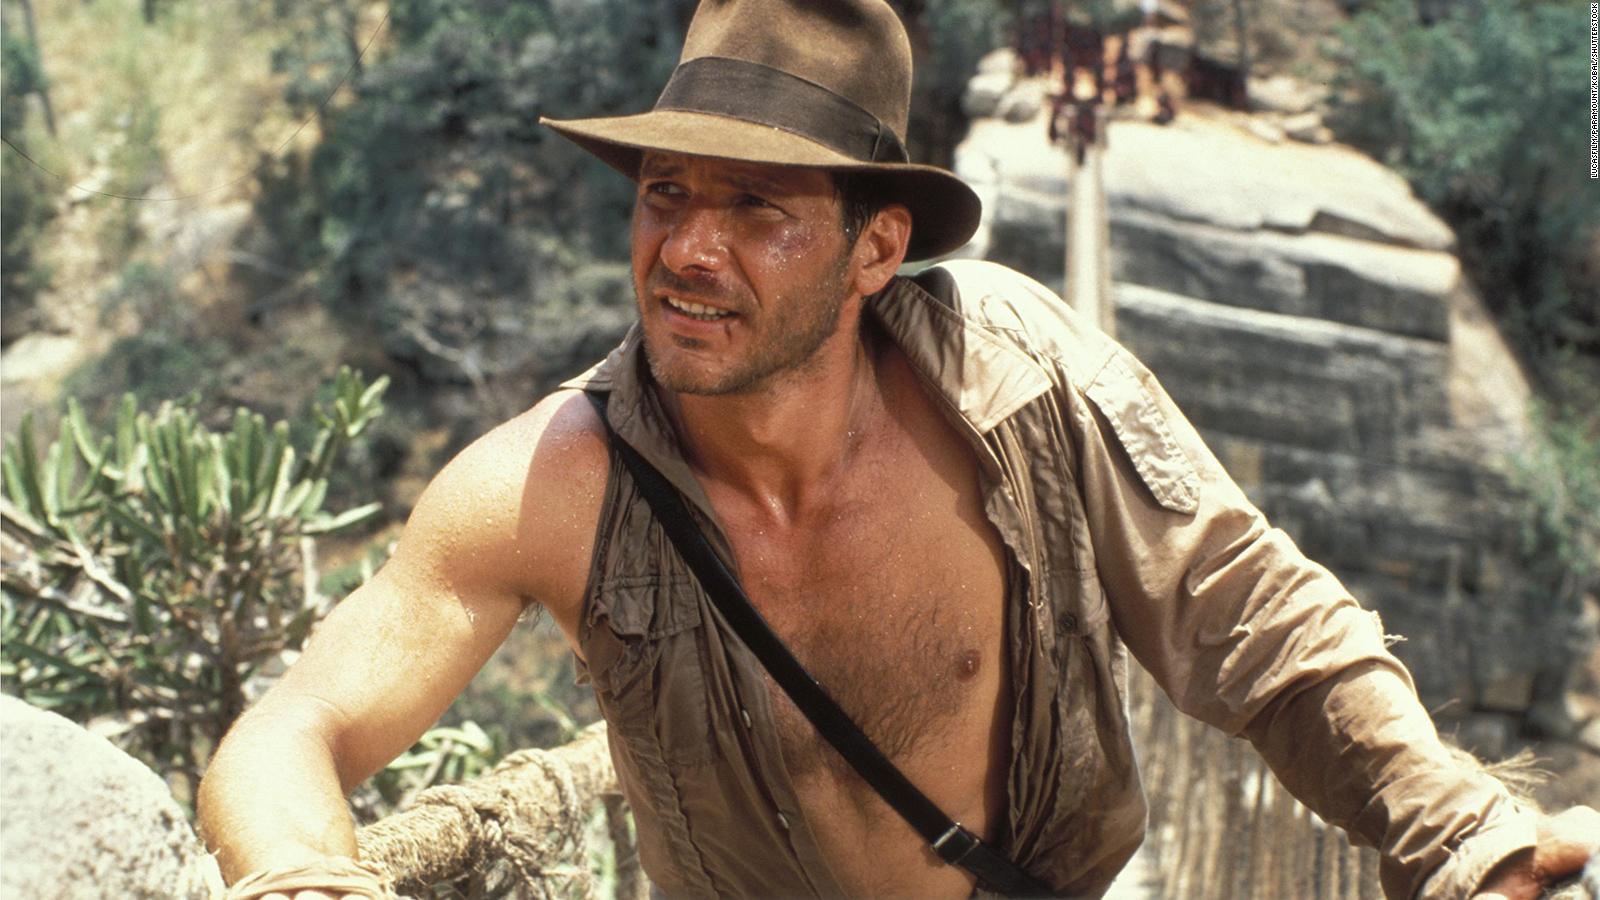 Harrison Ford será rejuvenescido digitalmente em Indiana Jones 5:  'Assustador